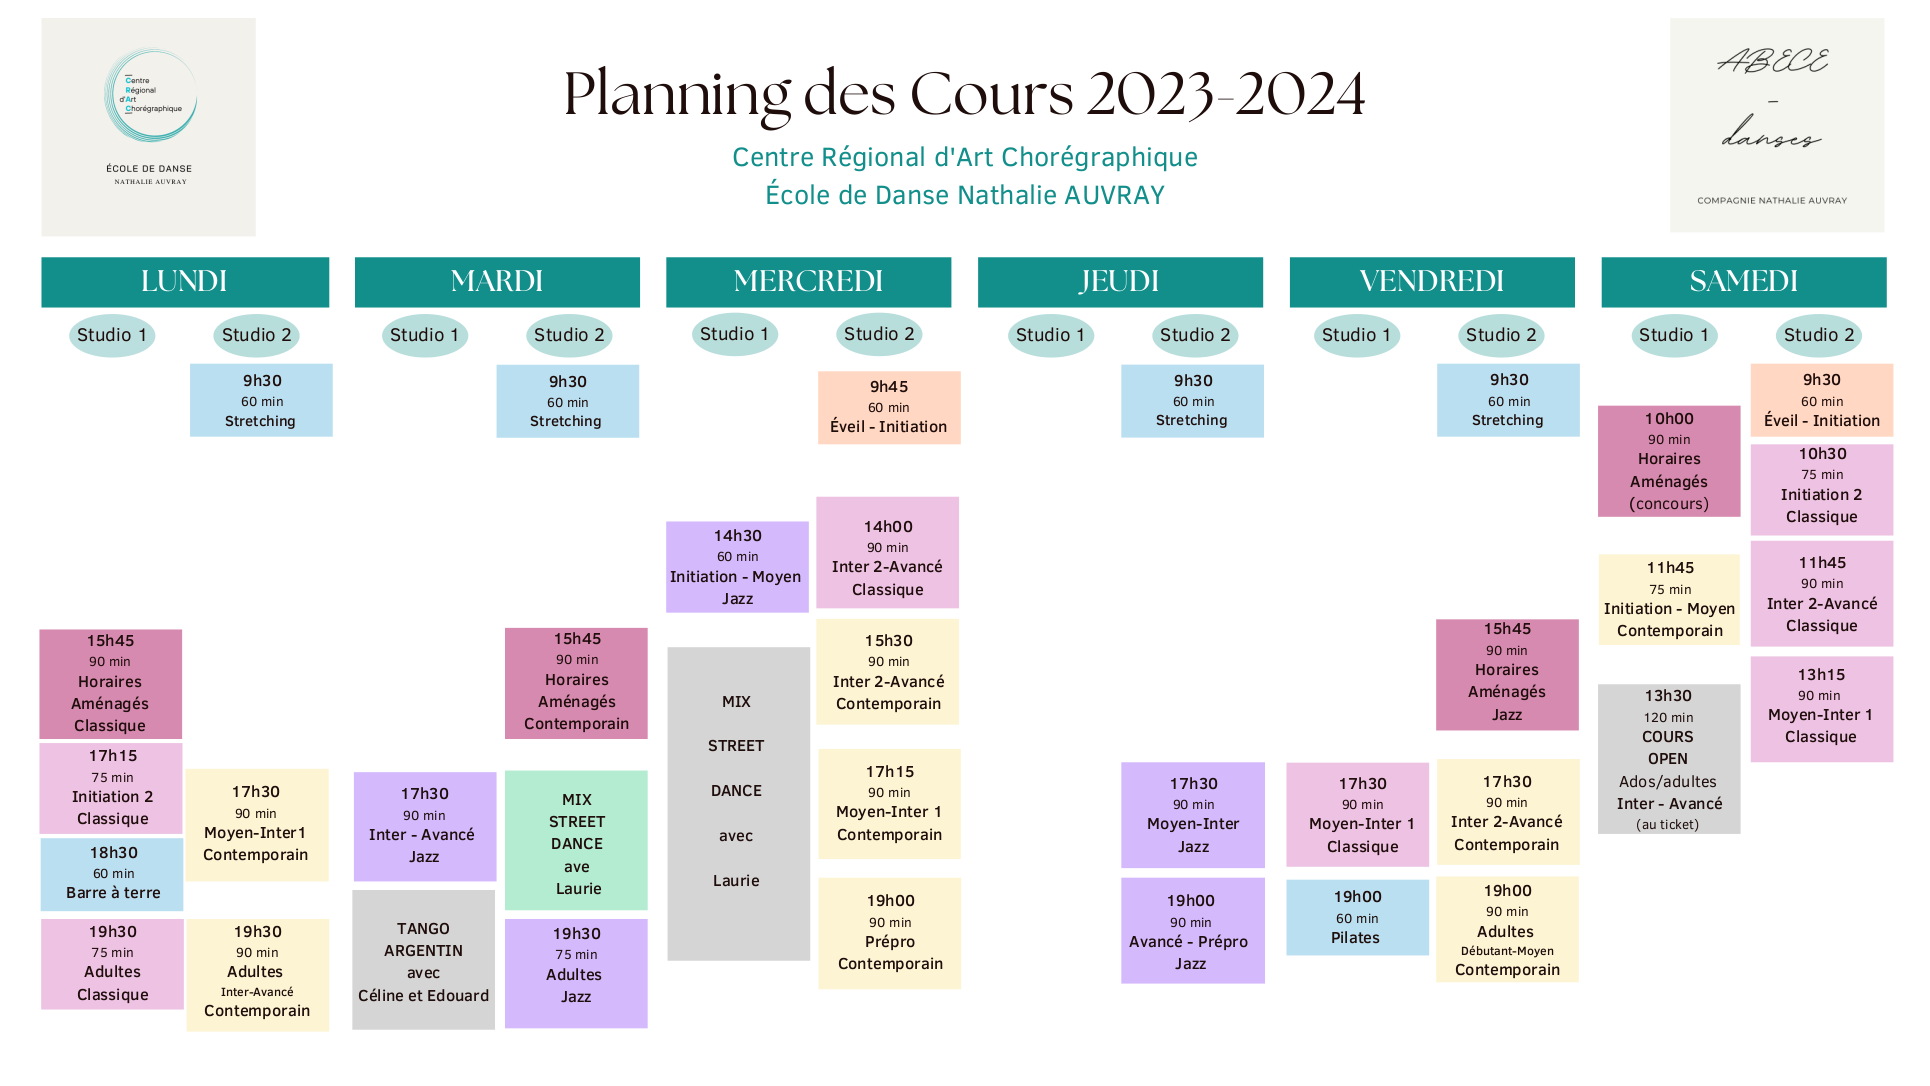 Planning 2022-2023